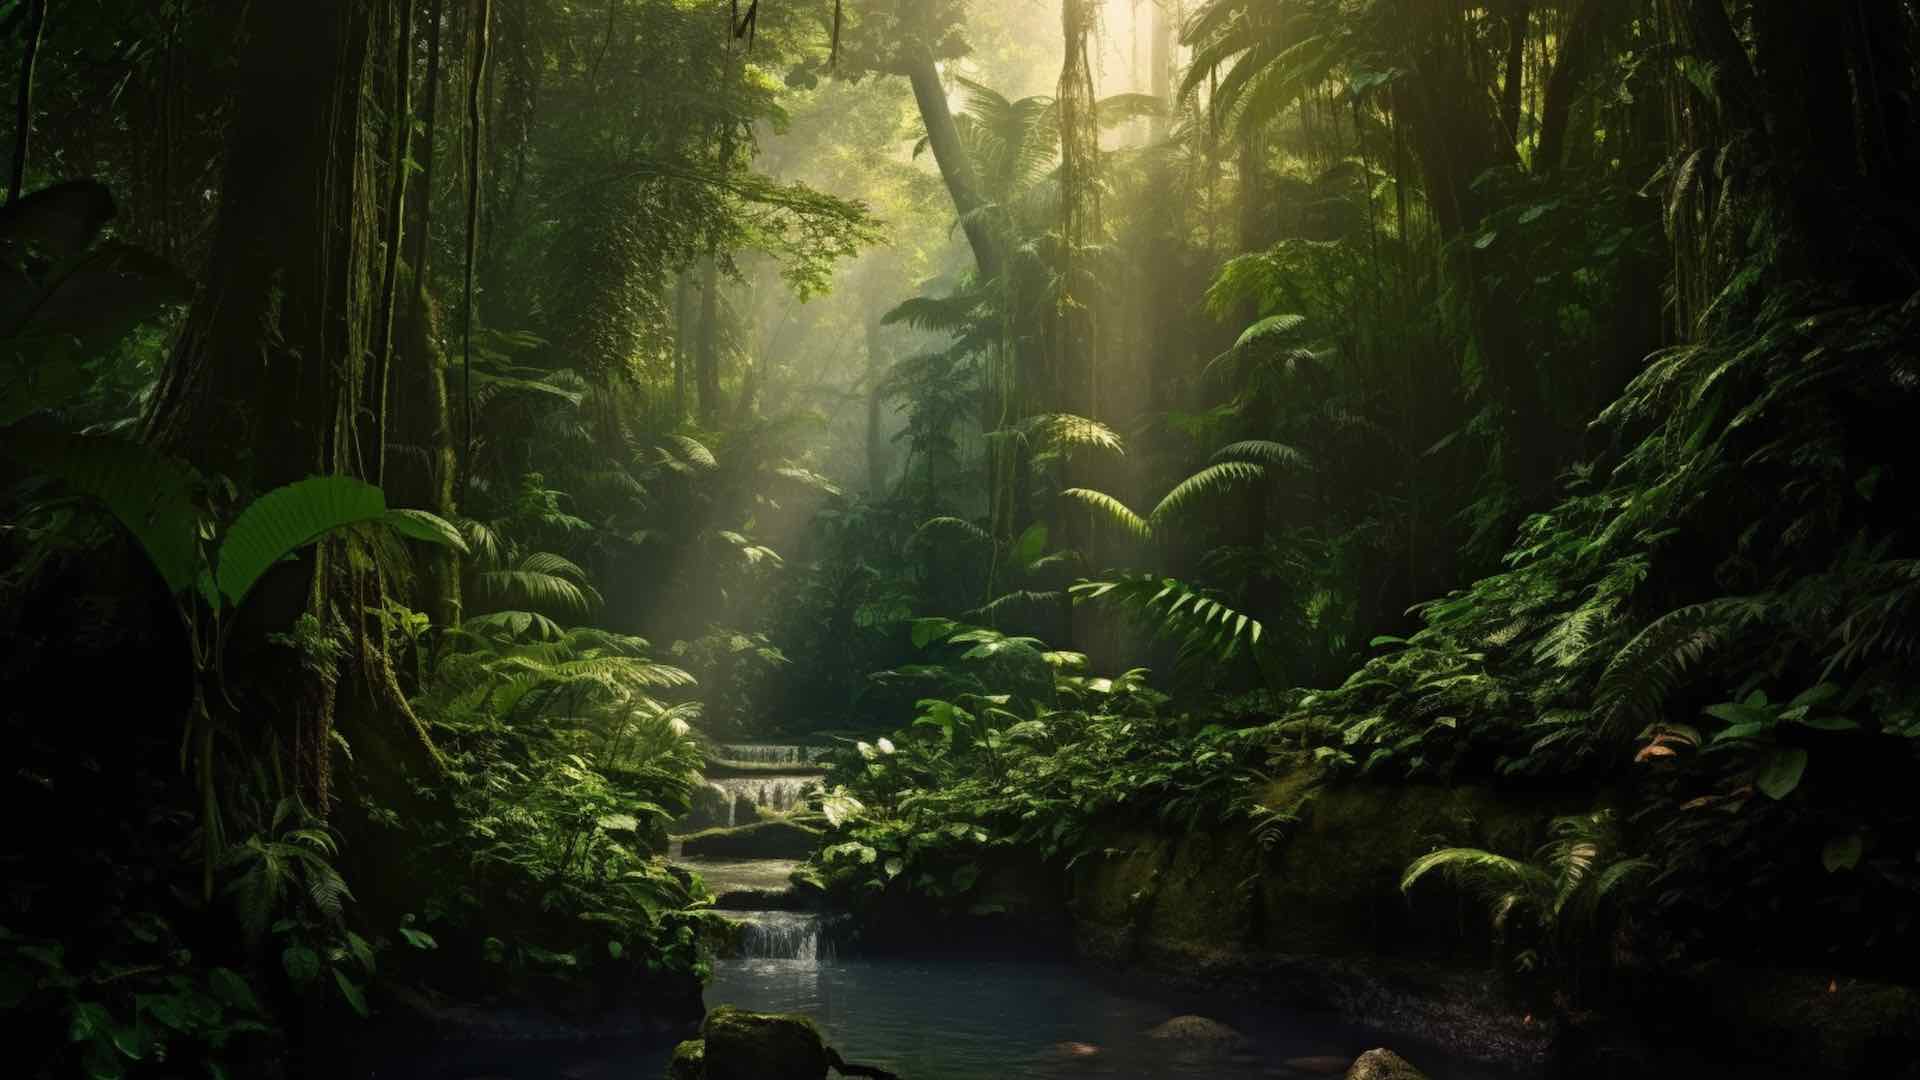 1.1 بلین ڈالر کا پروگرام ایمیزون کے بارشی جنگلات کے تحفظ کے لیے شروع کیا گیا۔